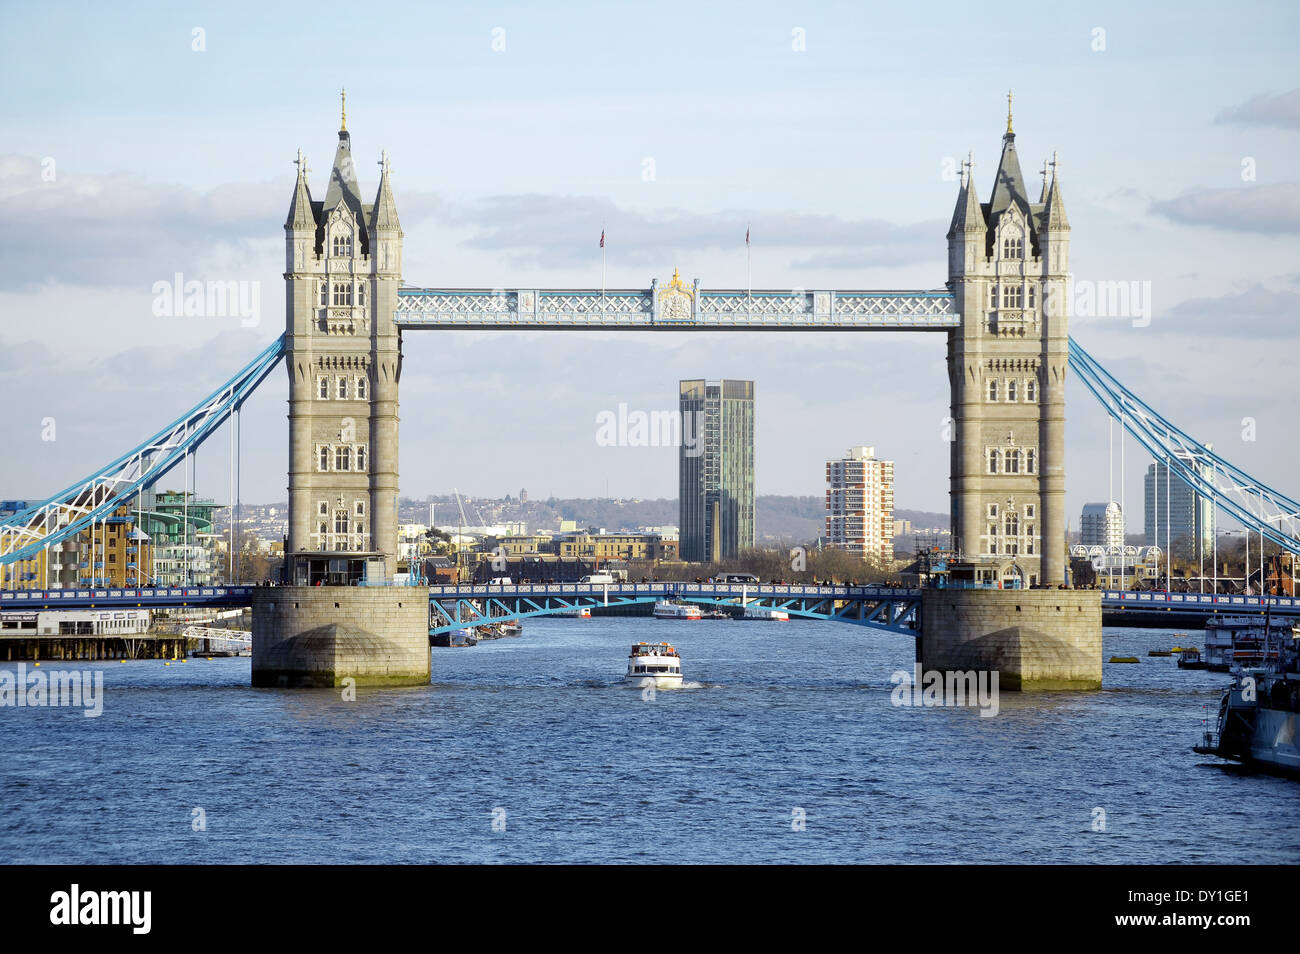 LONDON - März 7: Tower Bridge von London Bridge am 7. März 2014 in London gesehen. Stockfoto